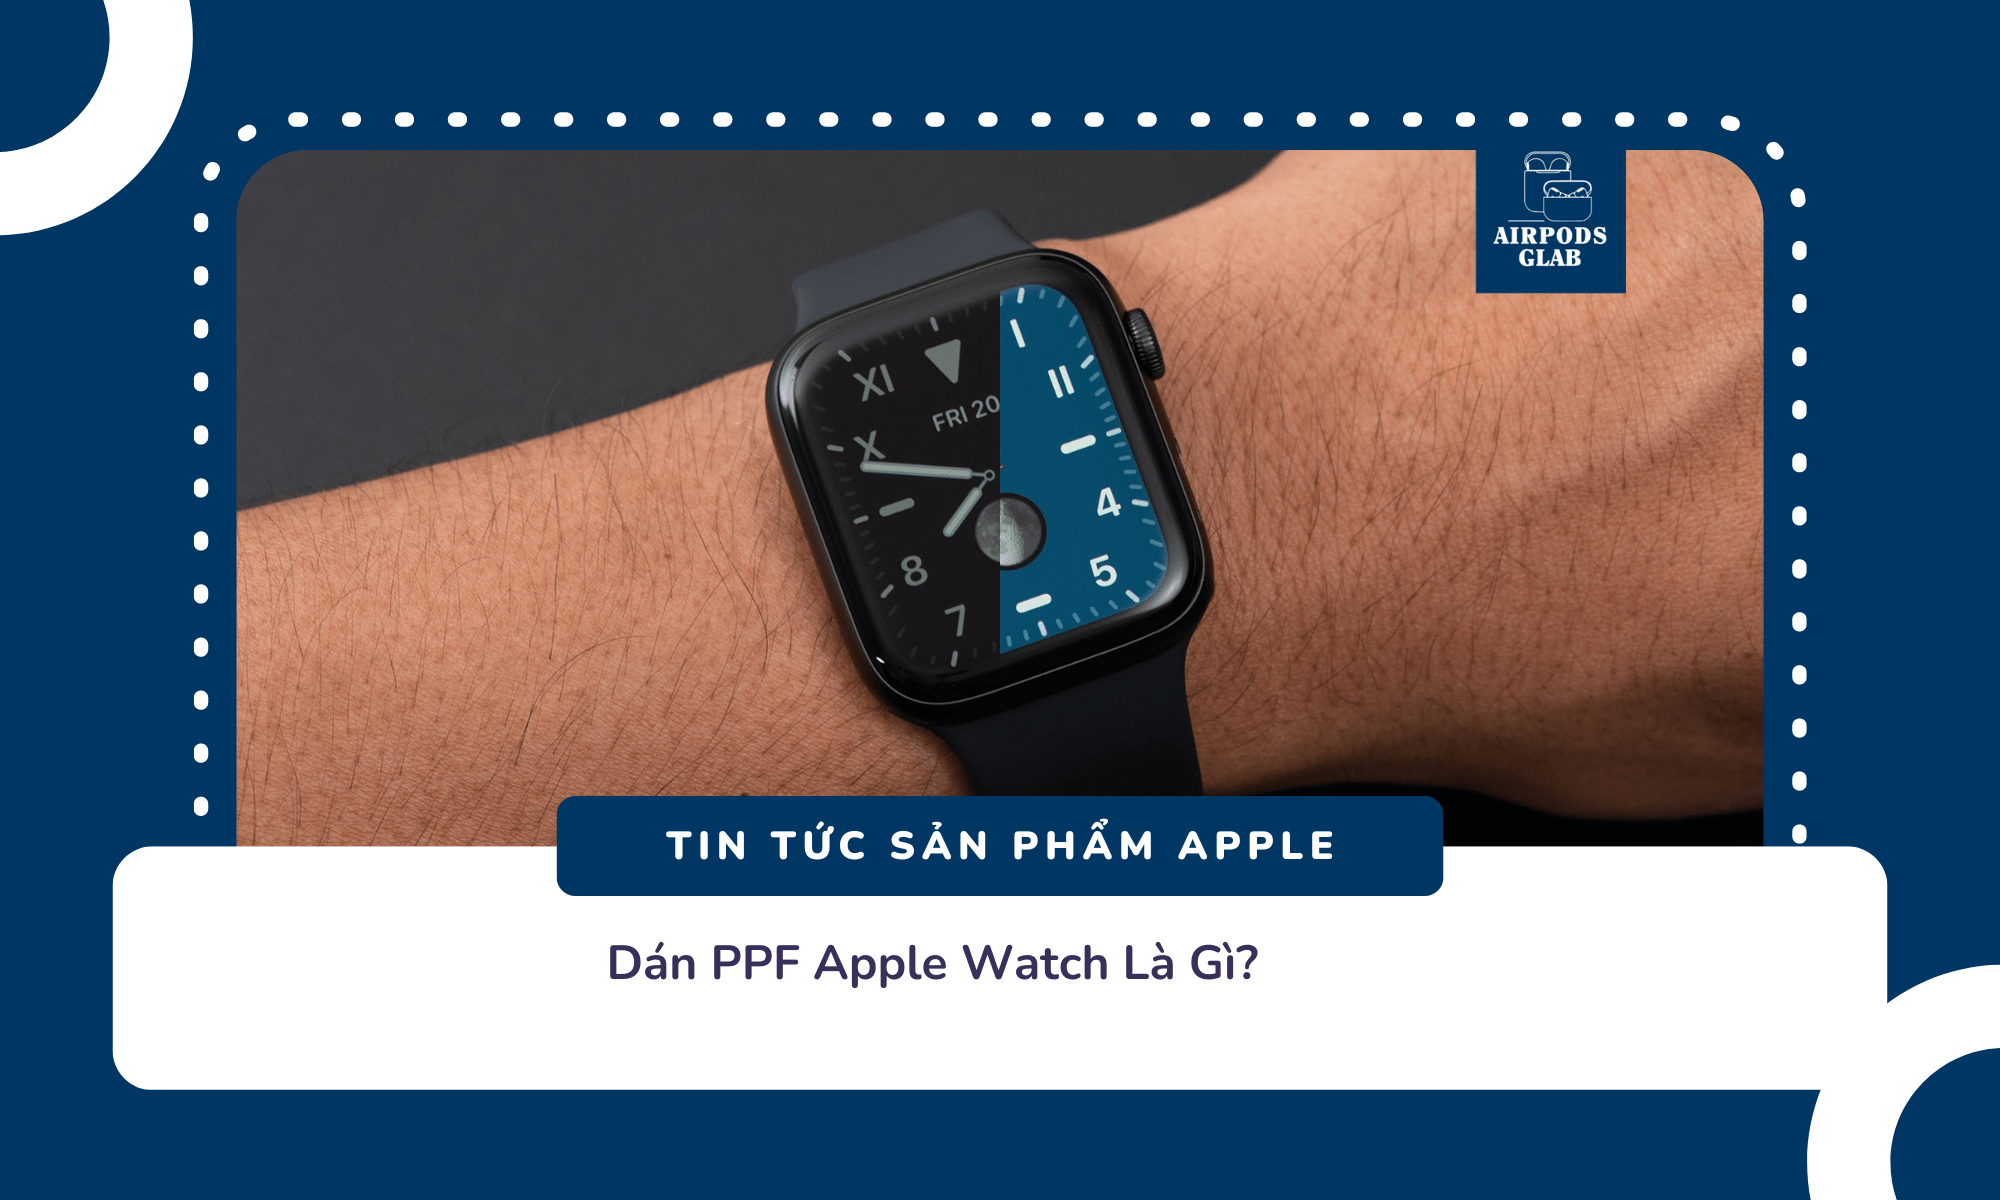 dan-ppf-apple-watch 